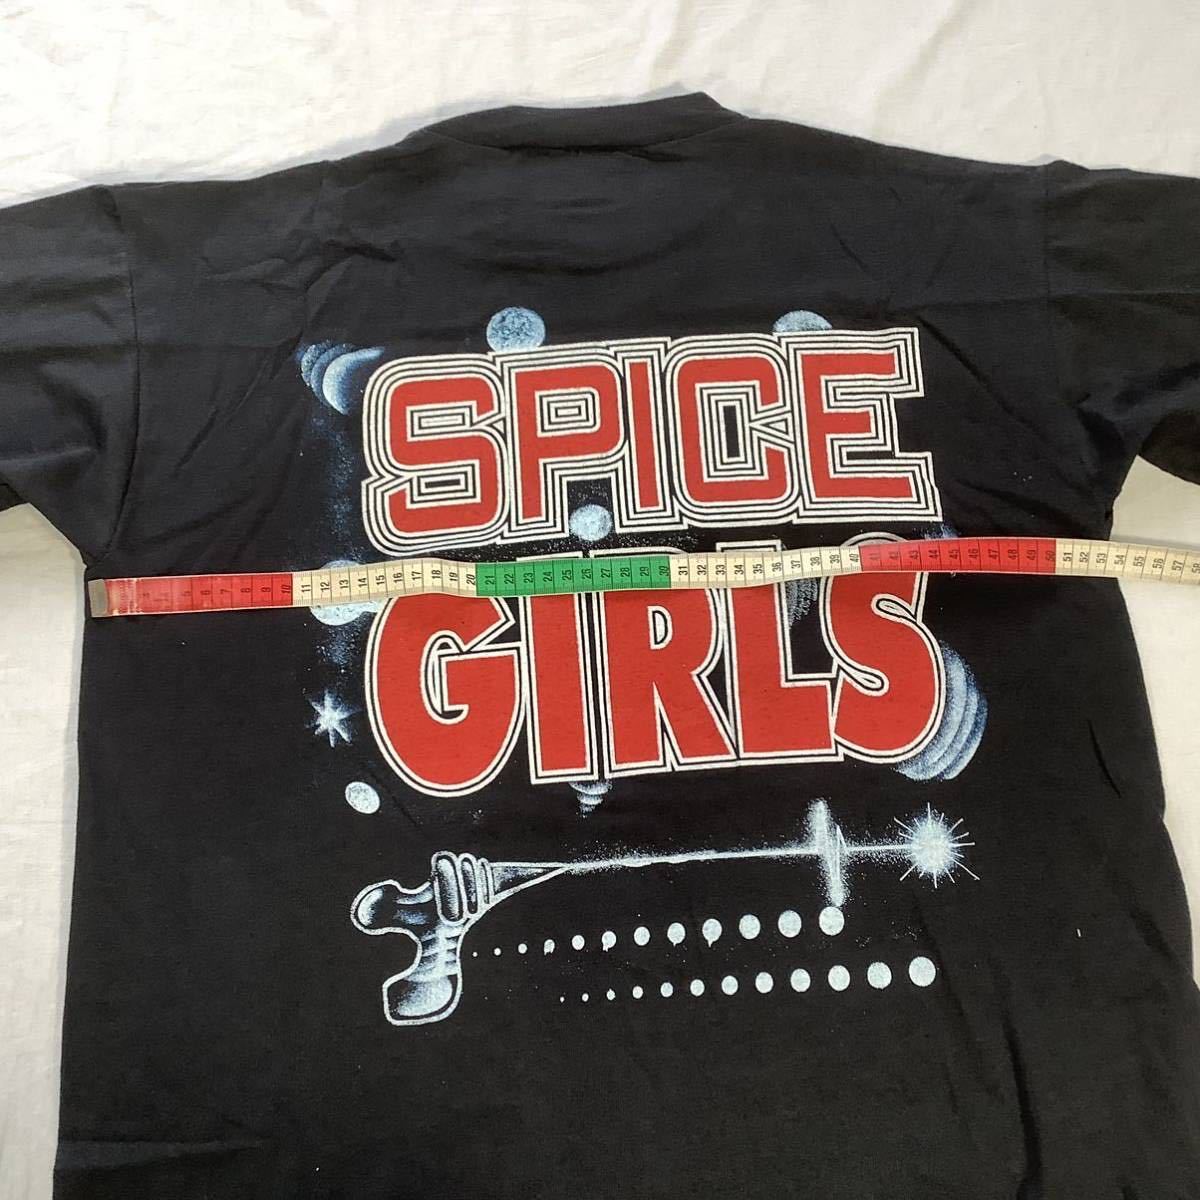 激レア! 1990s SPICE GIRLS スパイスガールズ EMPIRE製 ユーロ